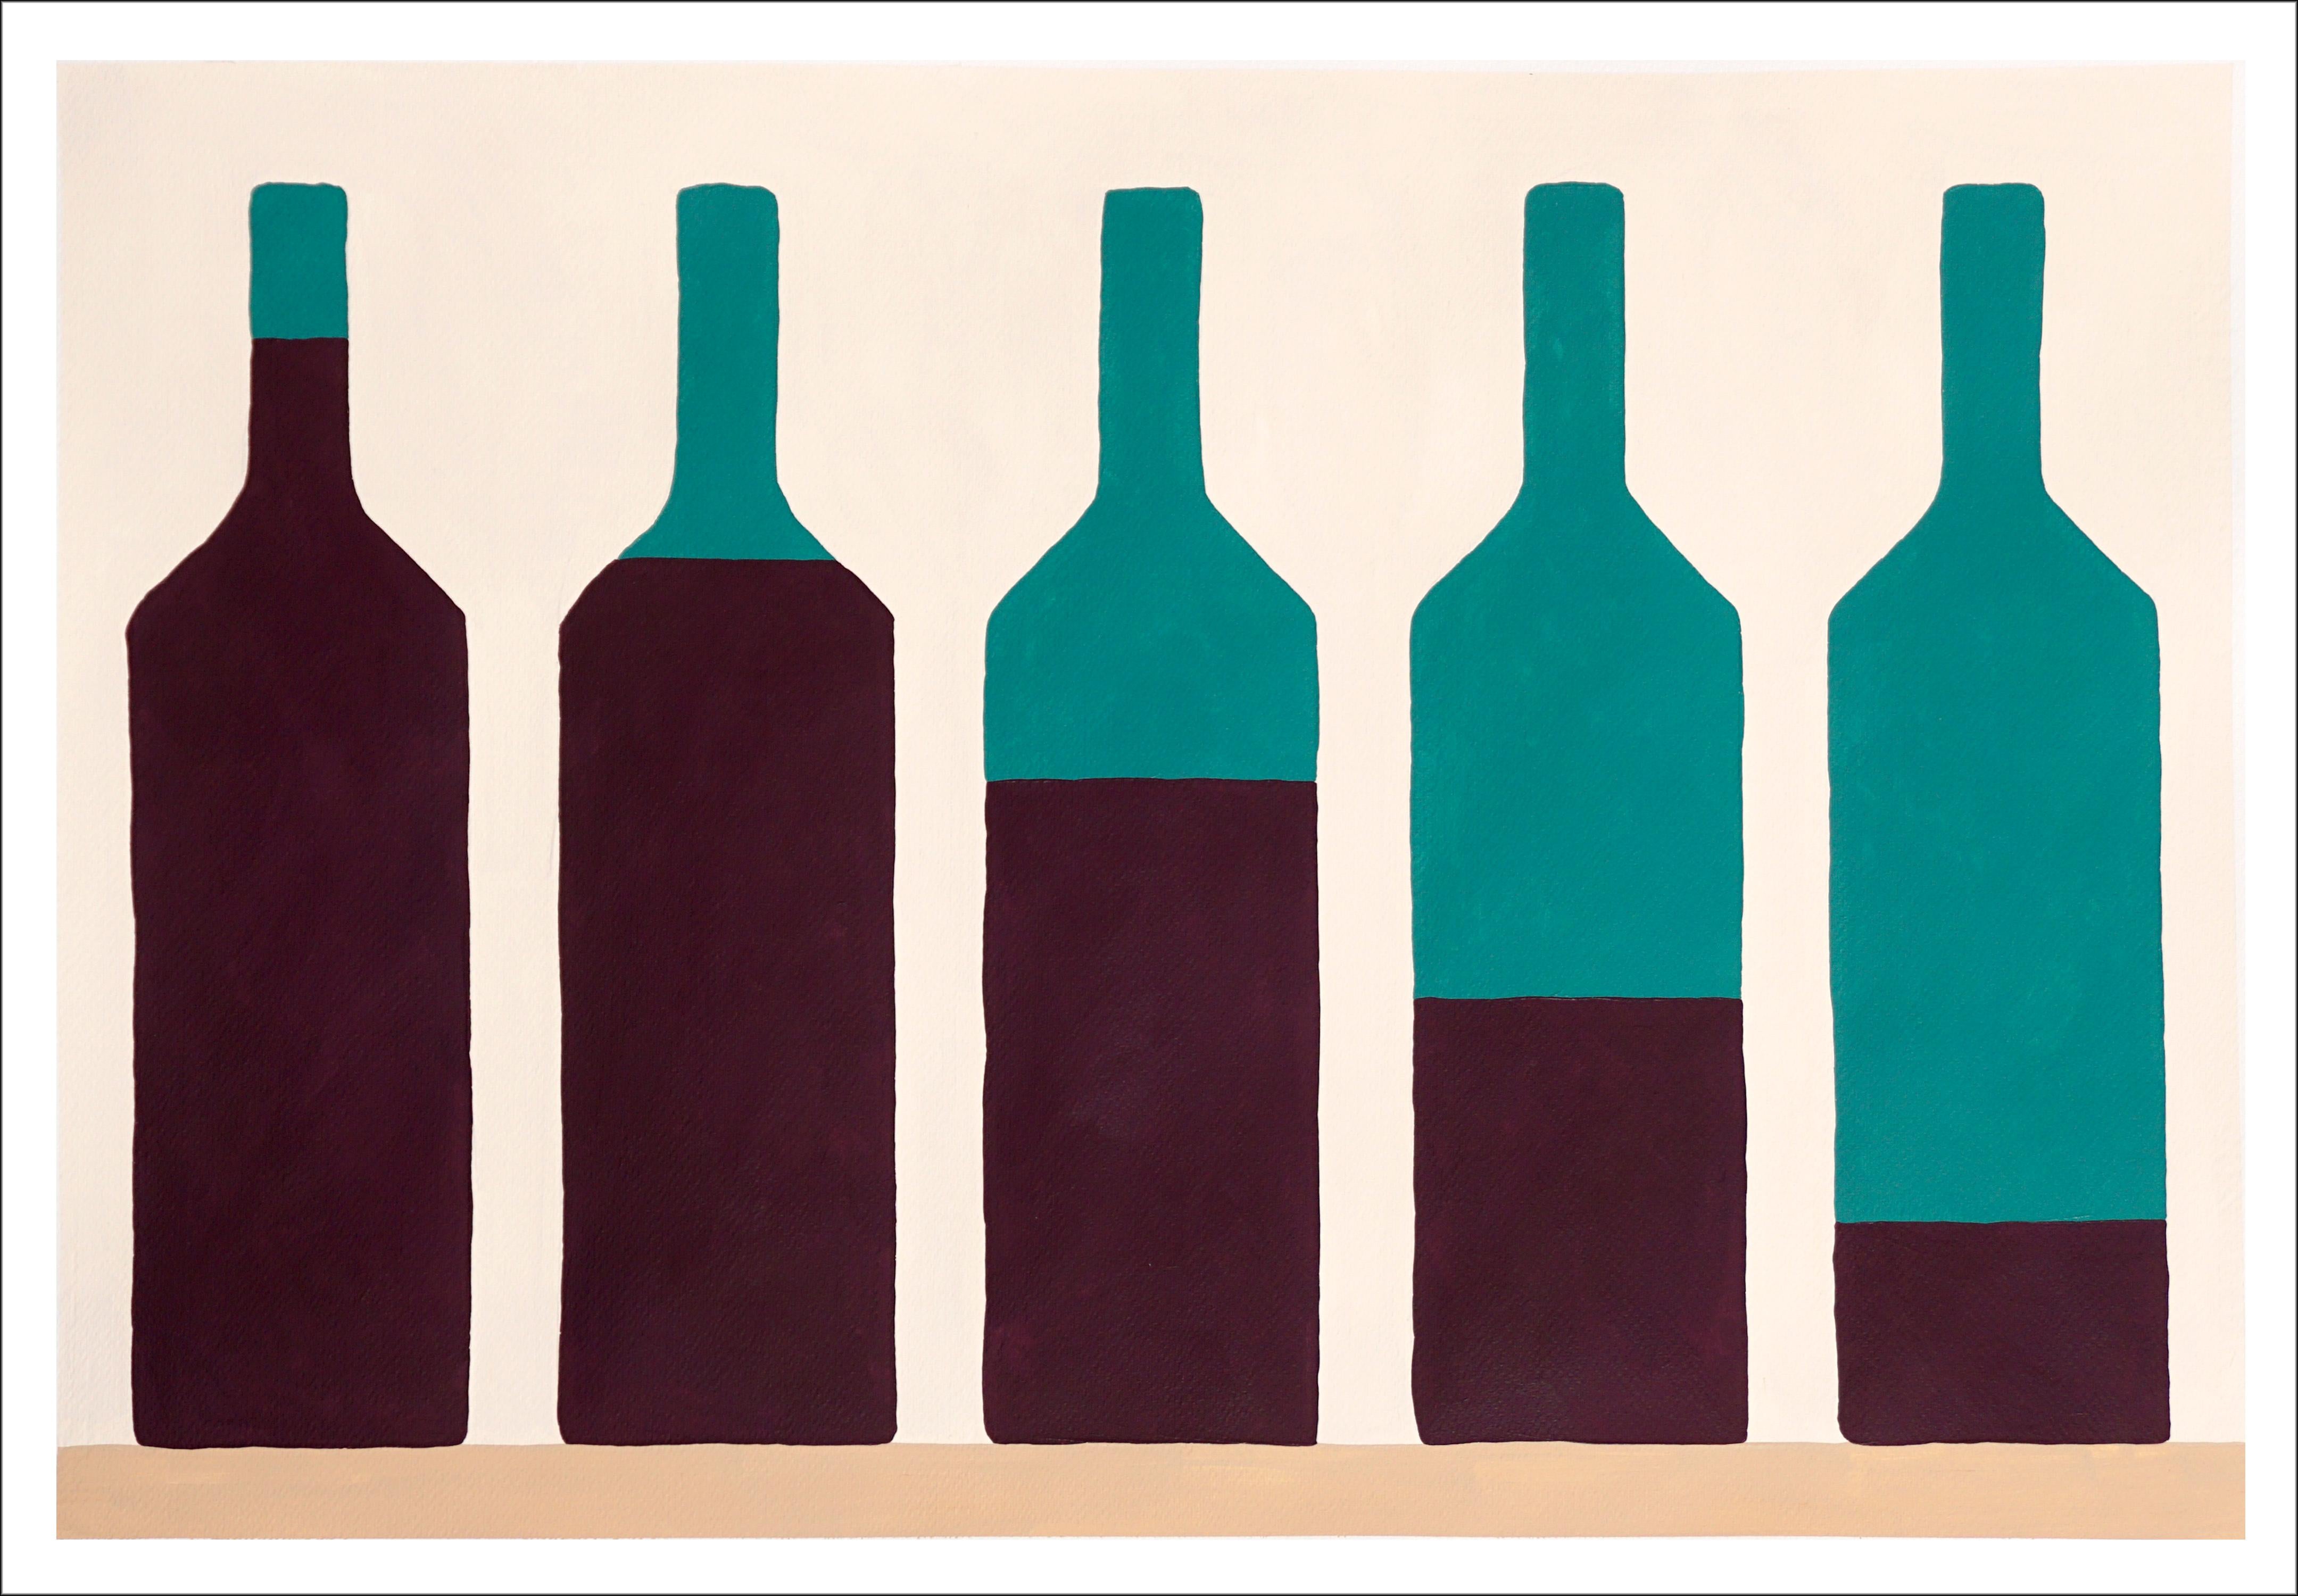 Fünf Weinreben, modernes Stillleben eines Weinkellers, Erdtöne, Naif-Grünflaschen